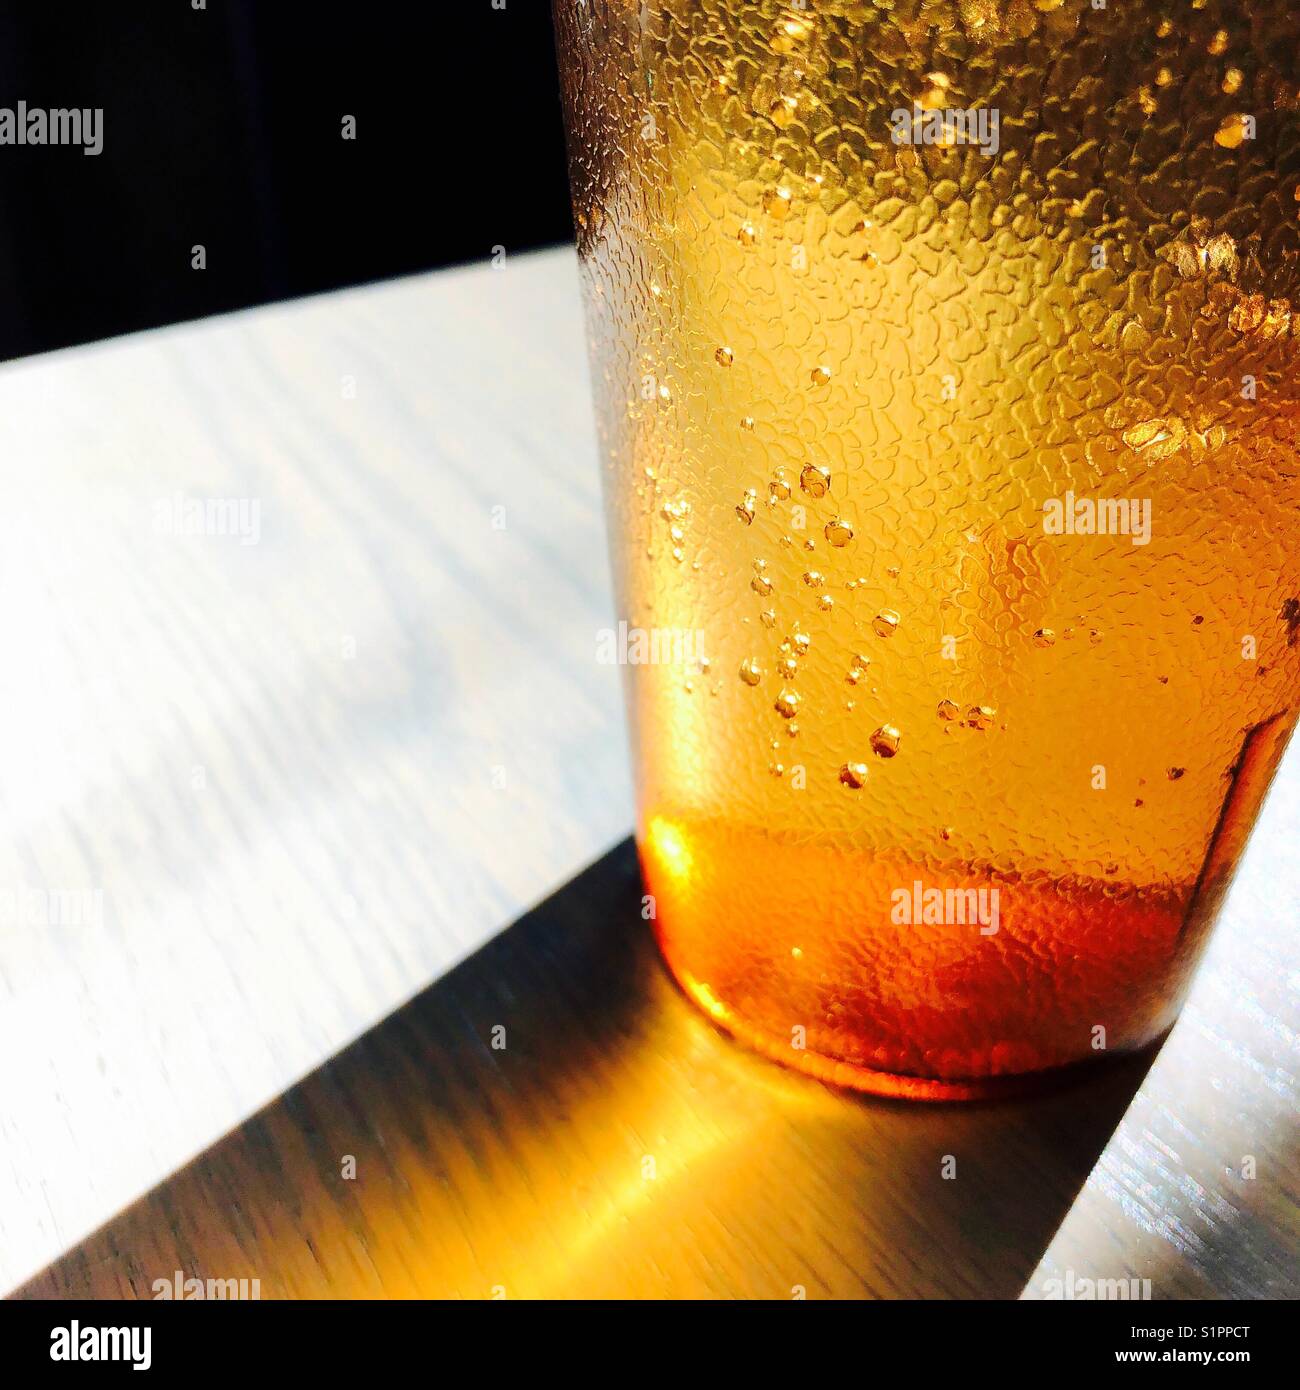 Un close up detail shot d'un verre d'eau dans une tasse en plastique orange translucide Banque D'Images